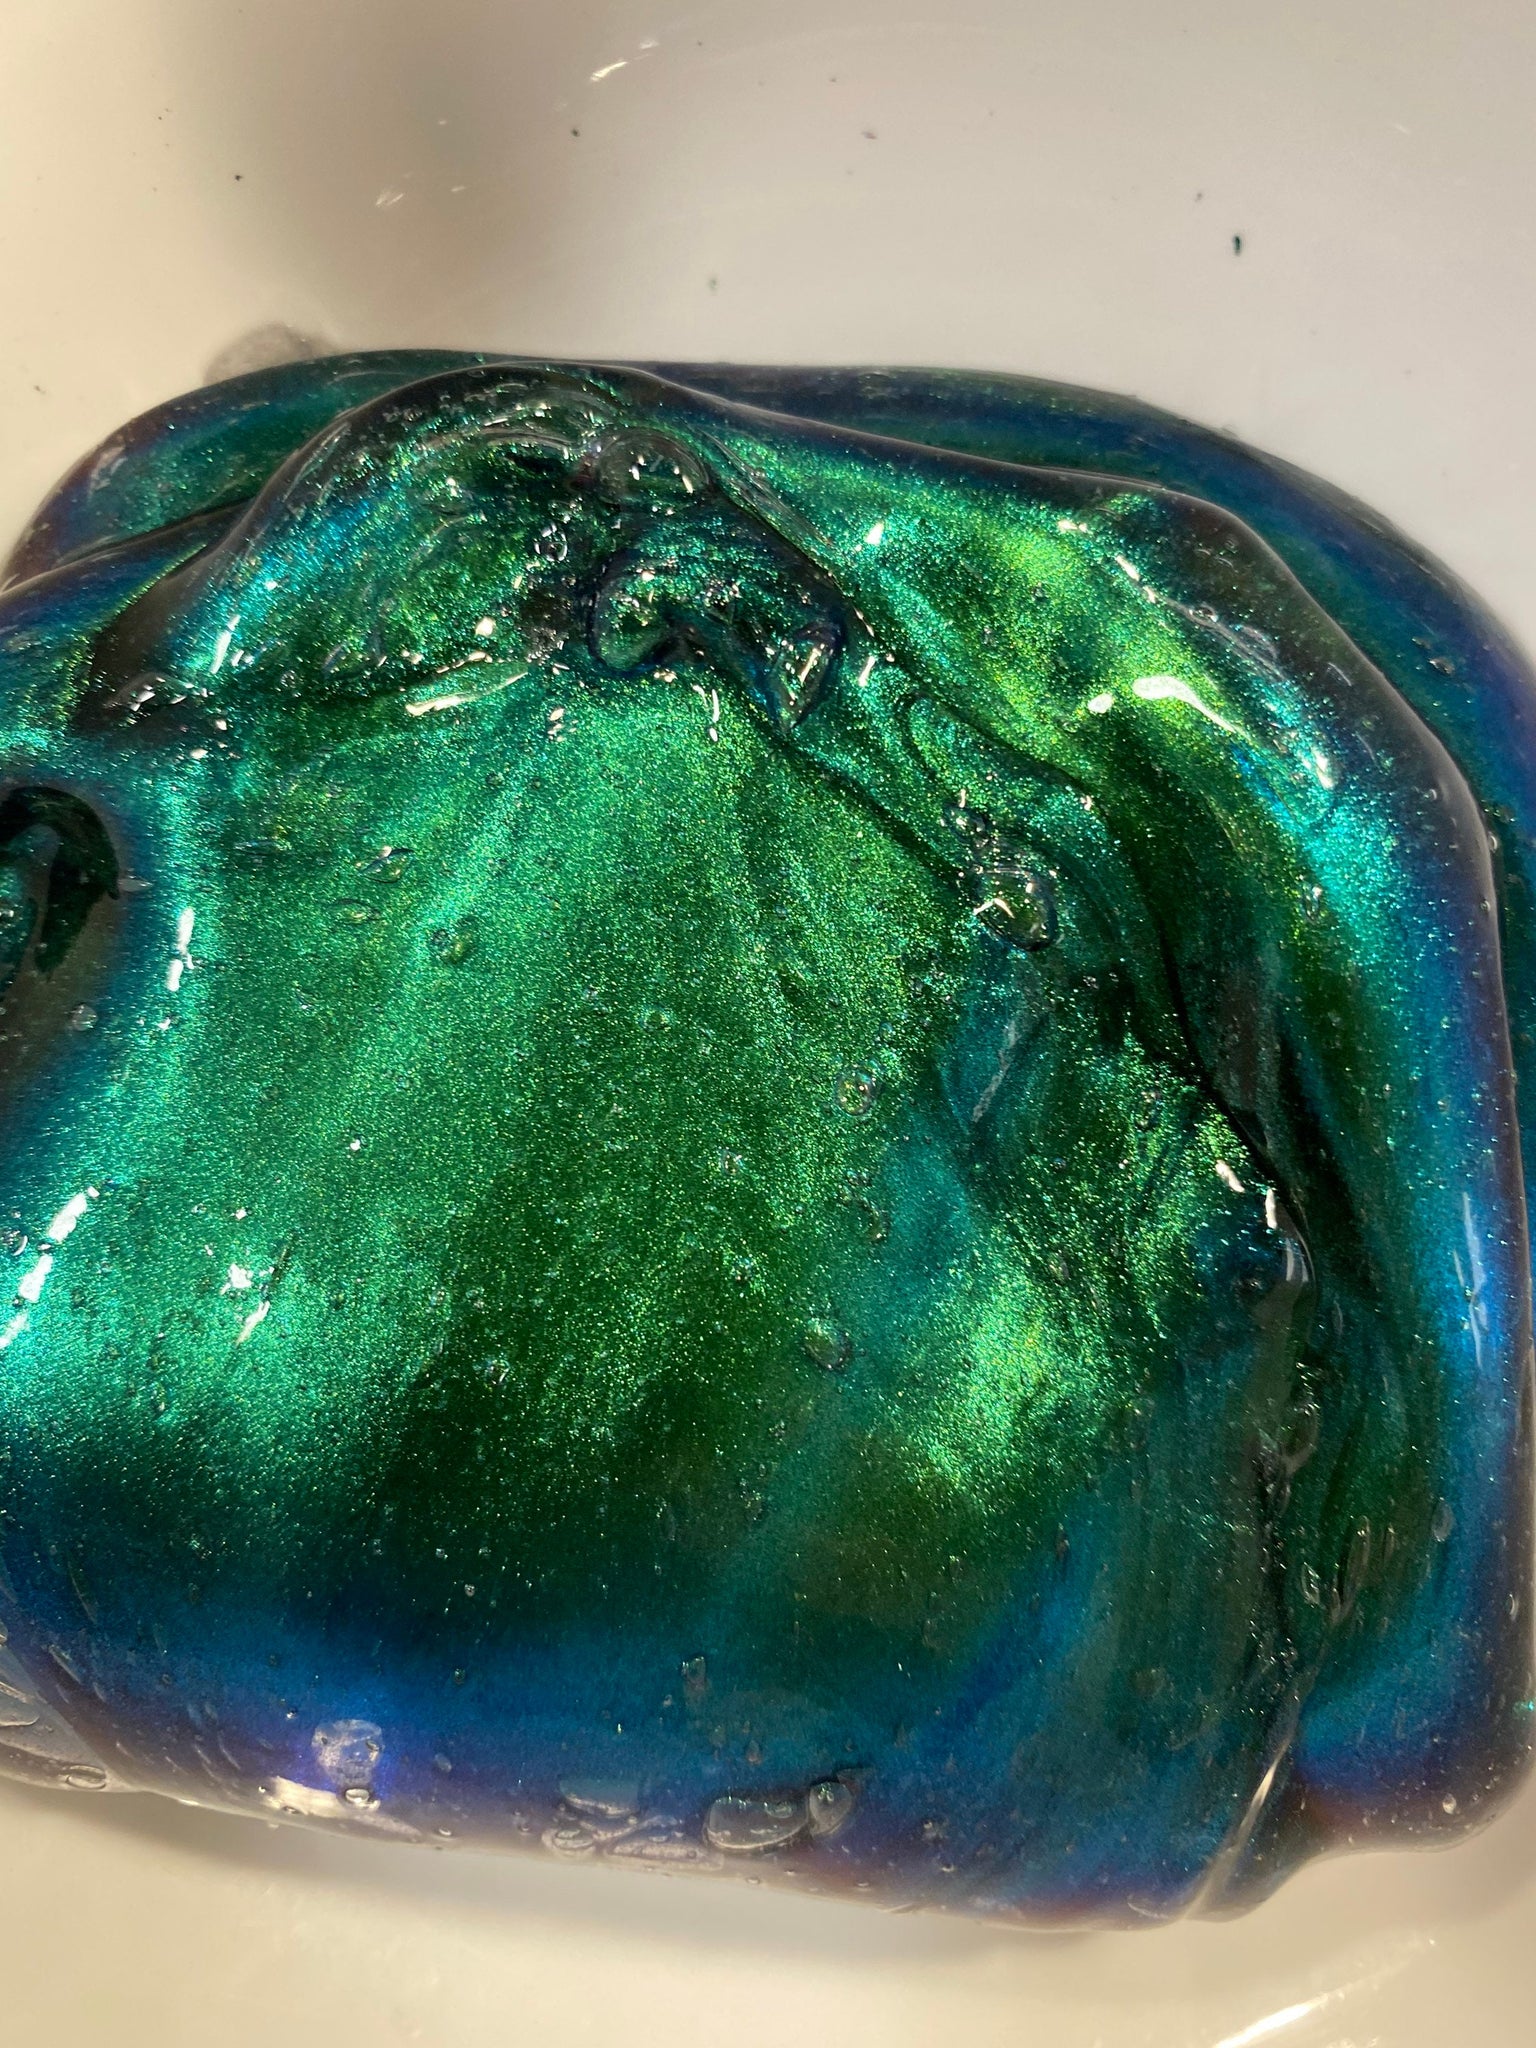 Chameleon Pigment - Green/Iris/Ice